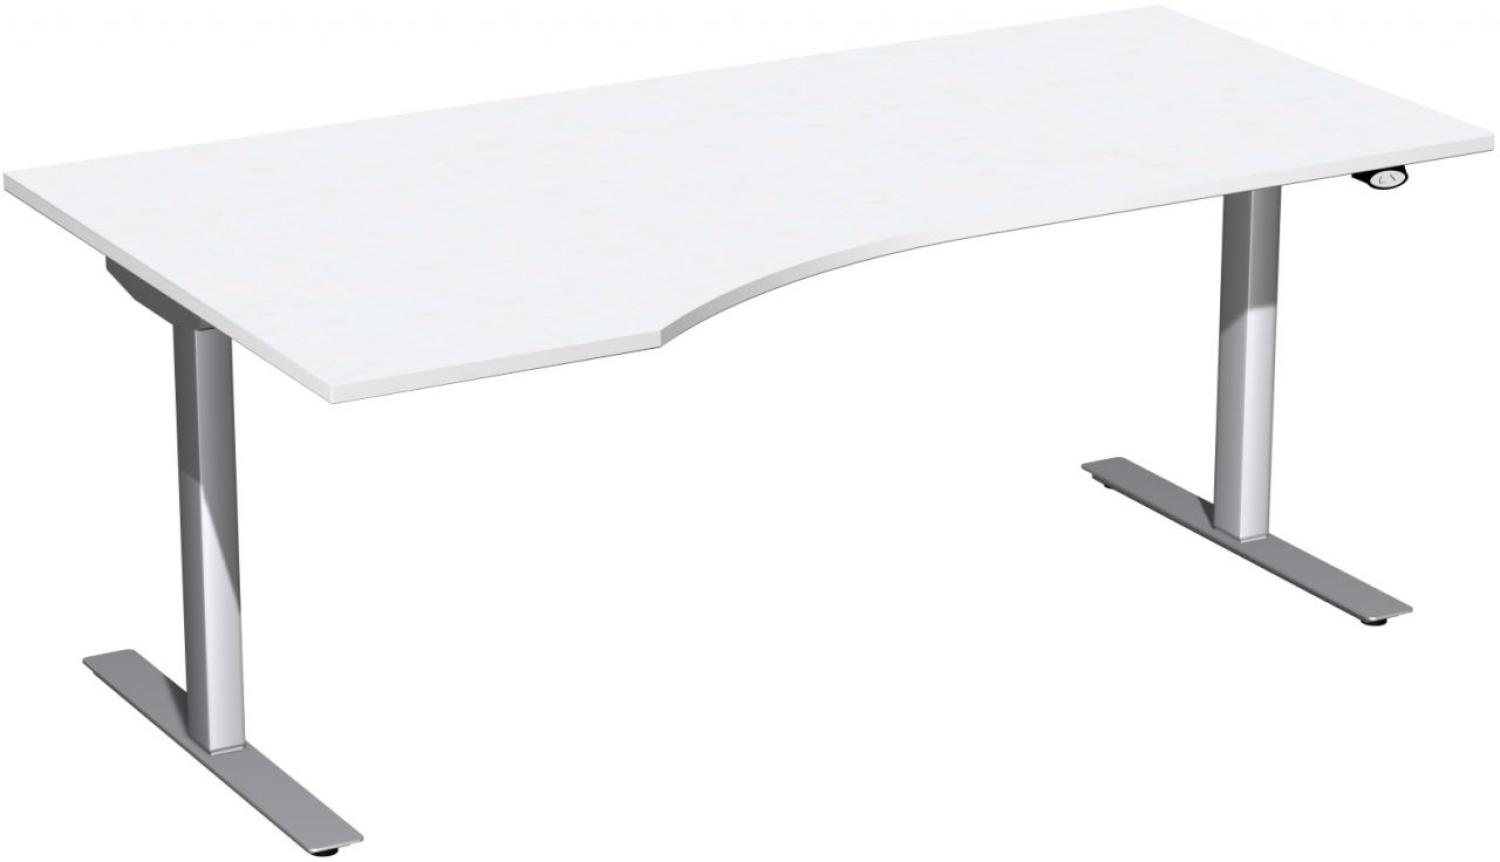 Elektro-Hubtisch 'Flex' links, höhenverstellbar, 180x100x68-116cm, Weiß / Silber Bild 1